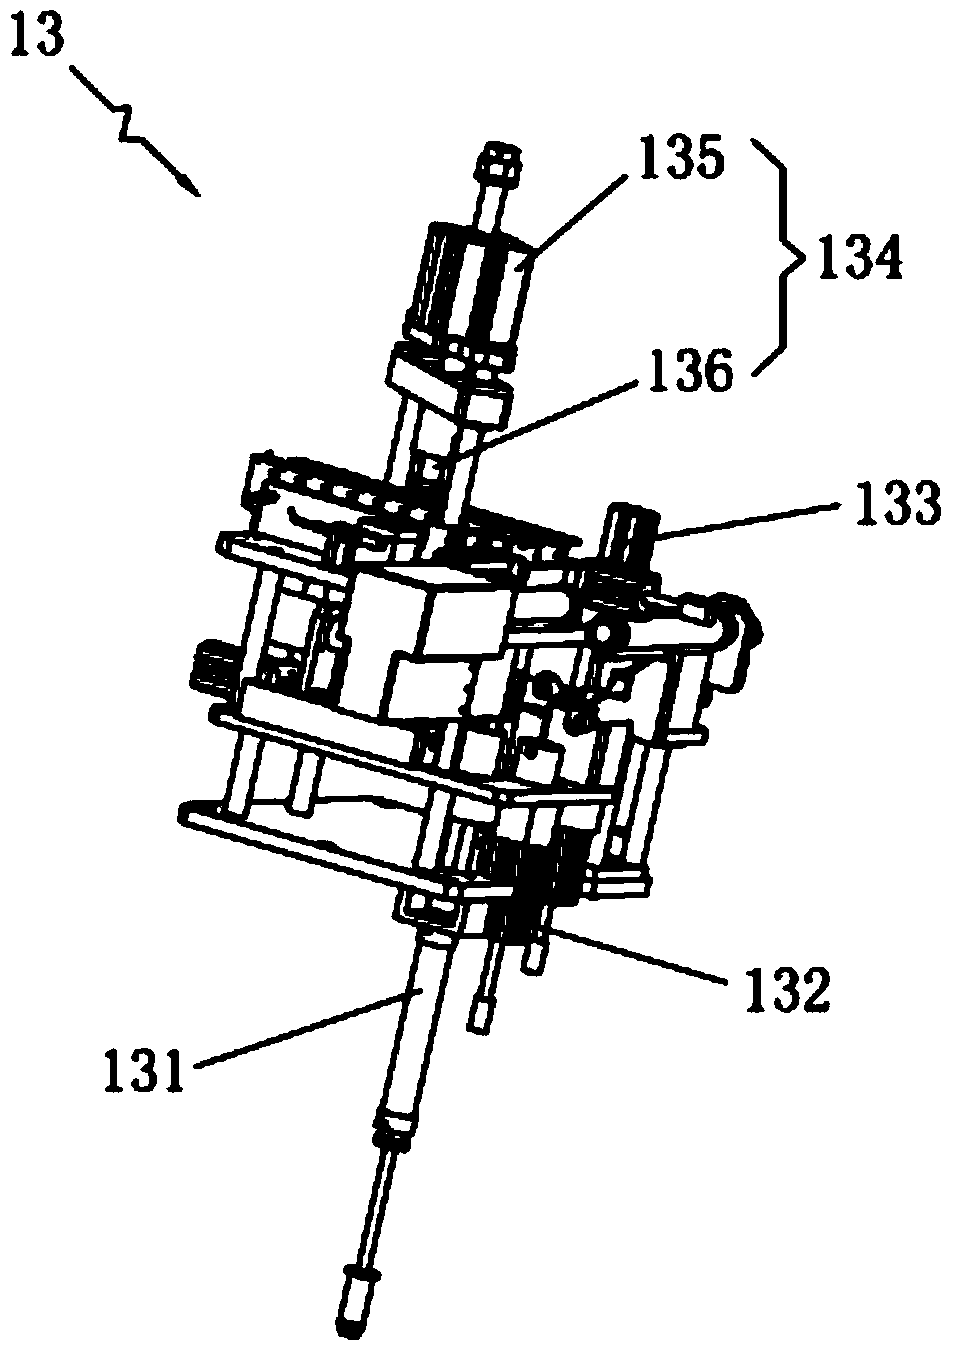 Automatic assembling machine of micro motors